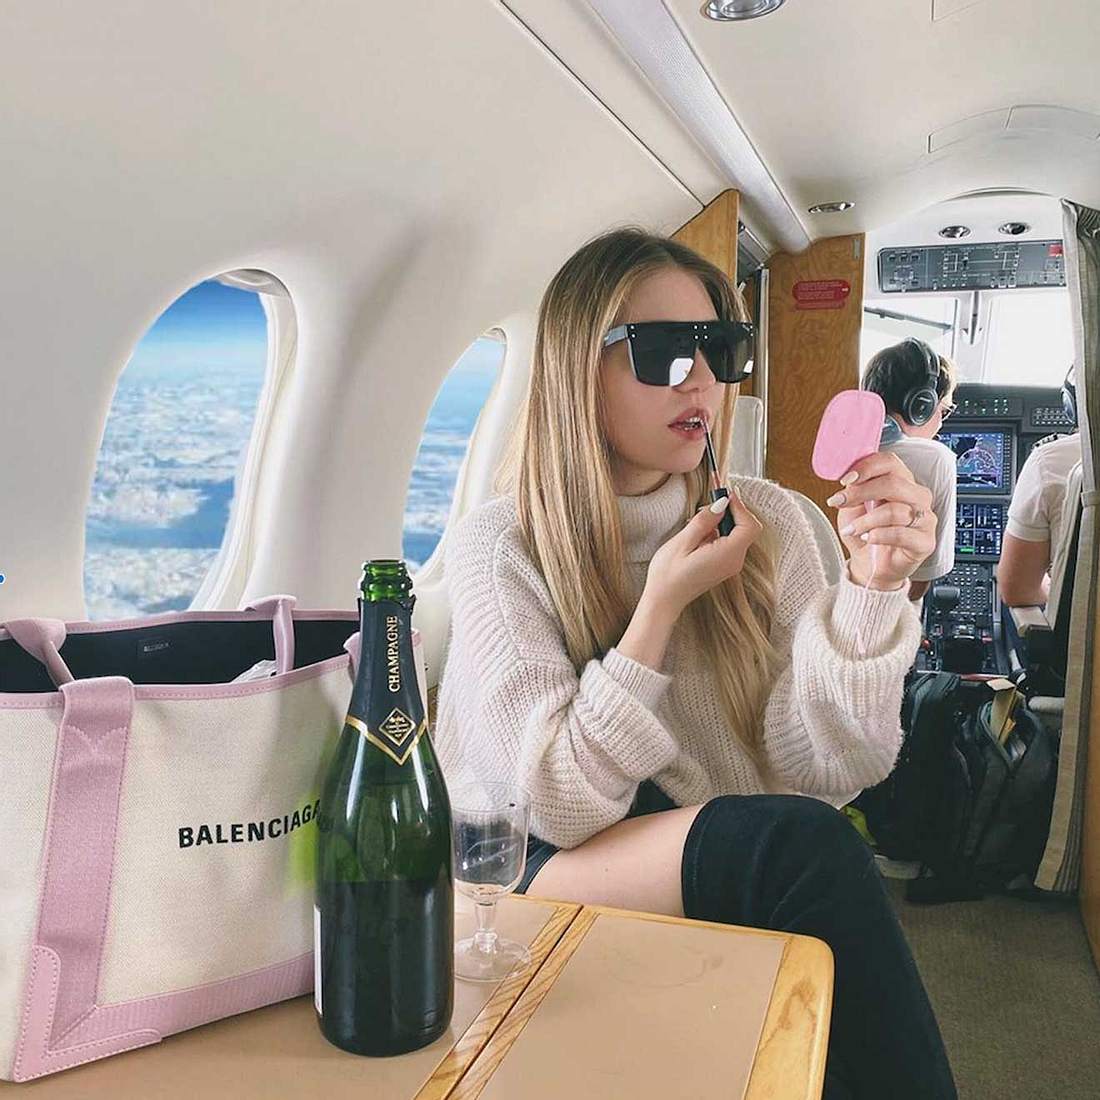 Bibis Beauty Palace: So schummelt sie auf Instagram!